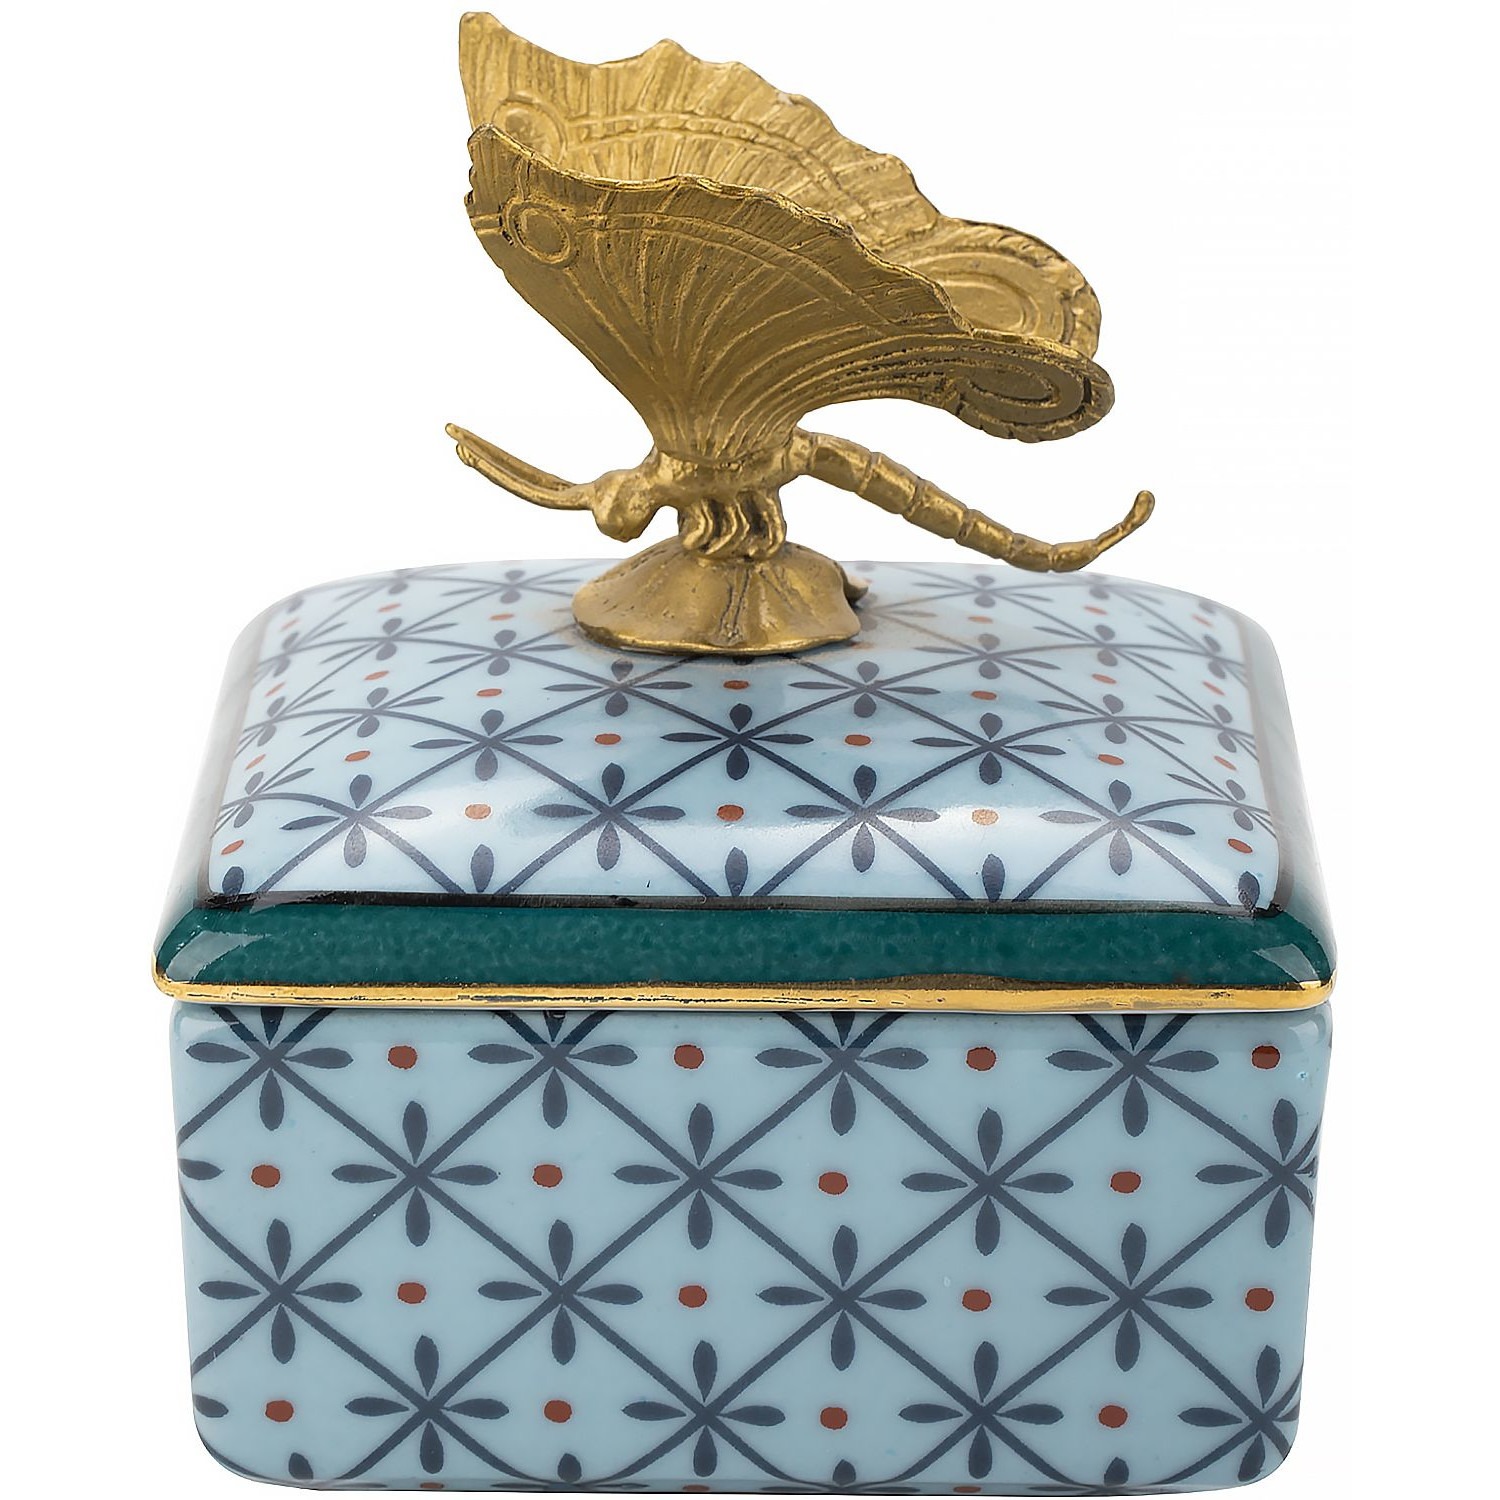 Шкатулка Glasar с бабочкой голубая 10х10х10 см шкатулка glasar синяя с бронзовым ангелом и узорчатым декором 17x17x15 см